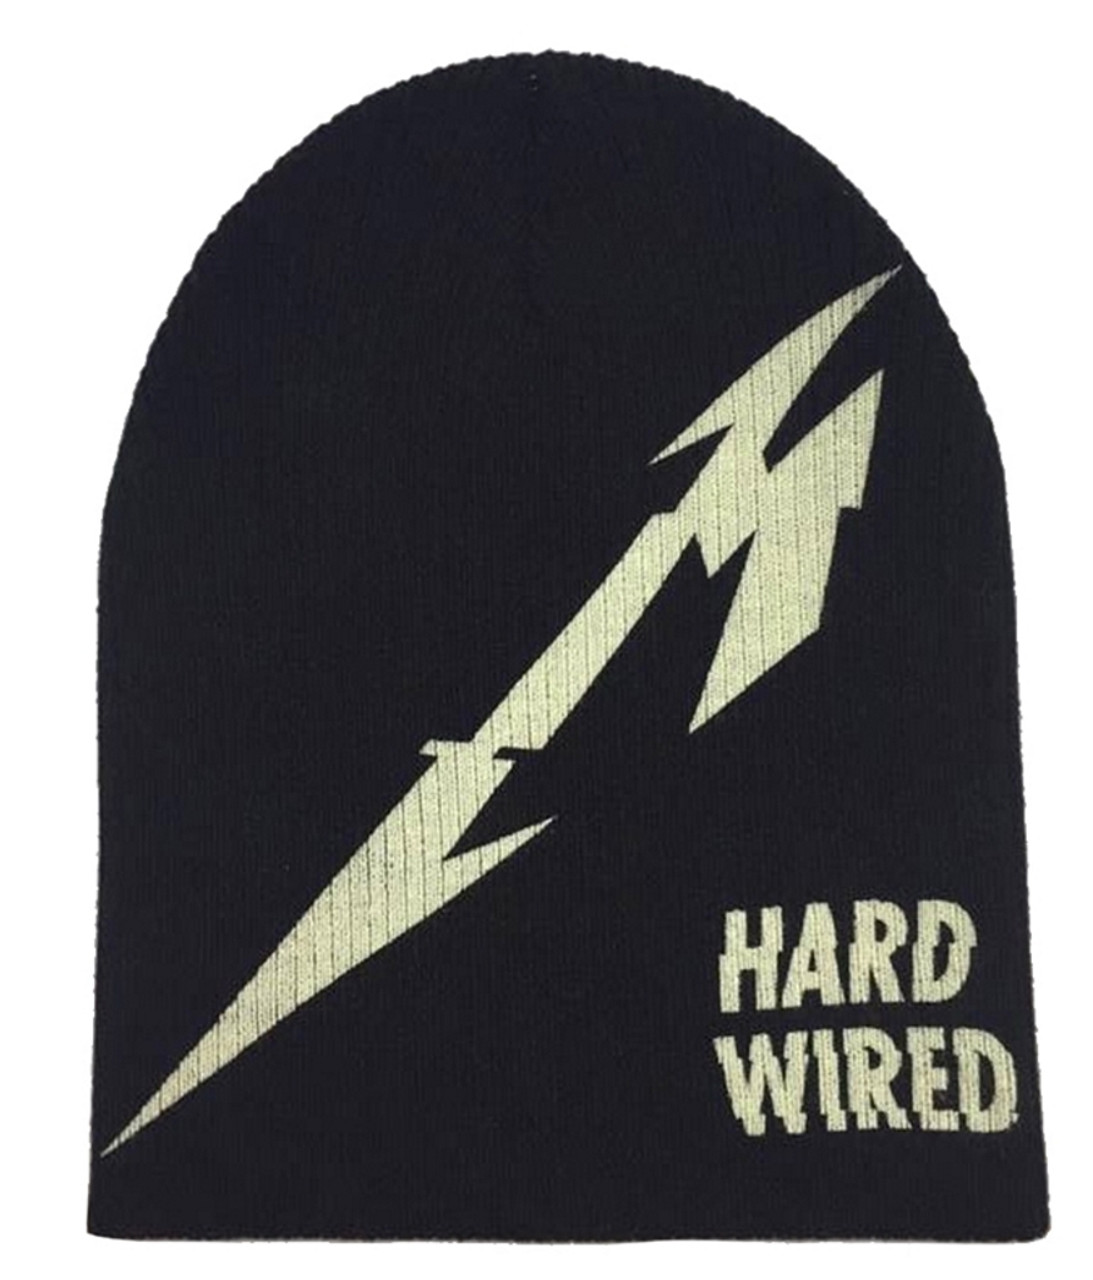 Metallica 'Hardwired' Beanie Hat